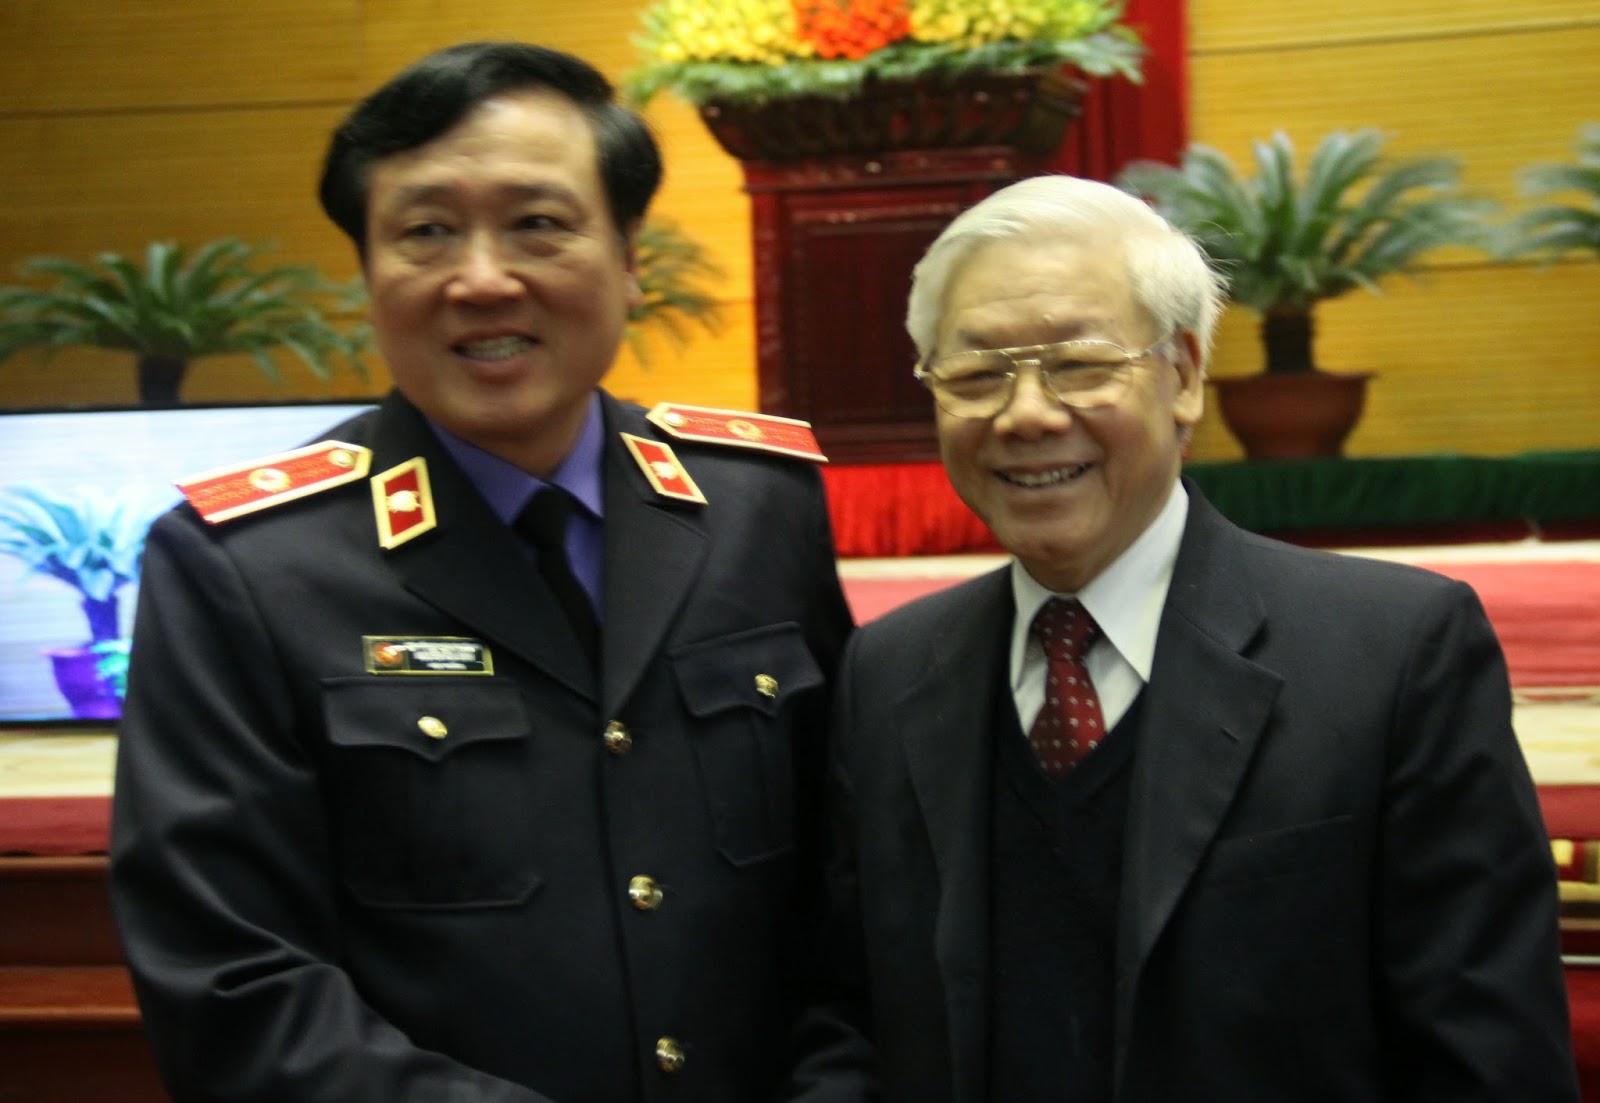 Tổng Bí thư Nguyễn Phú Trọng chỉ đạo Viện KSND Tối cao: Tay đã nhúng chàm thì không thể chống tham nhũng!